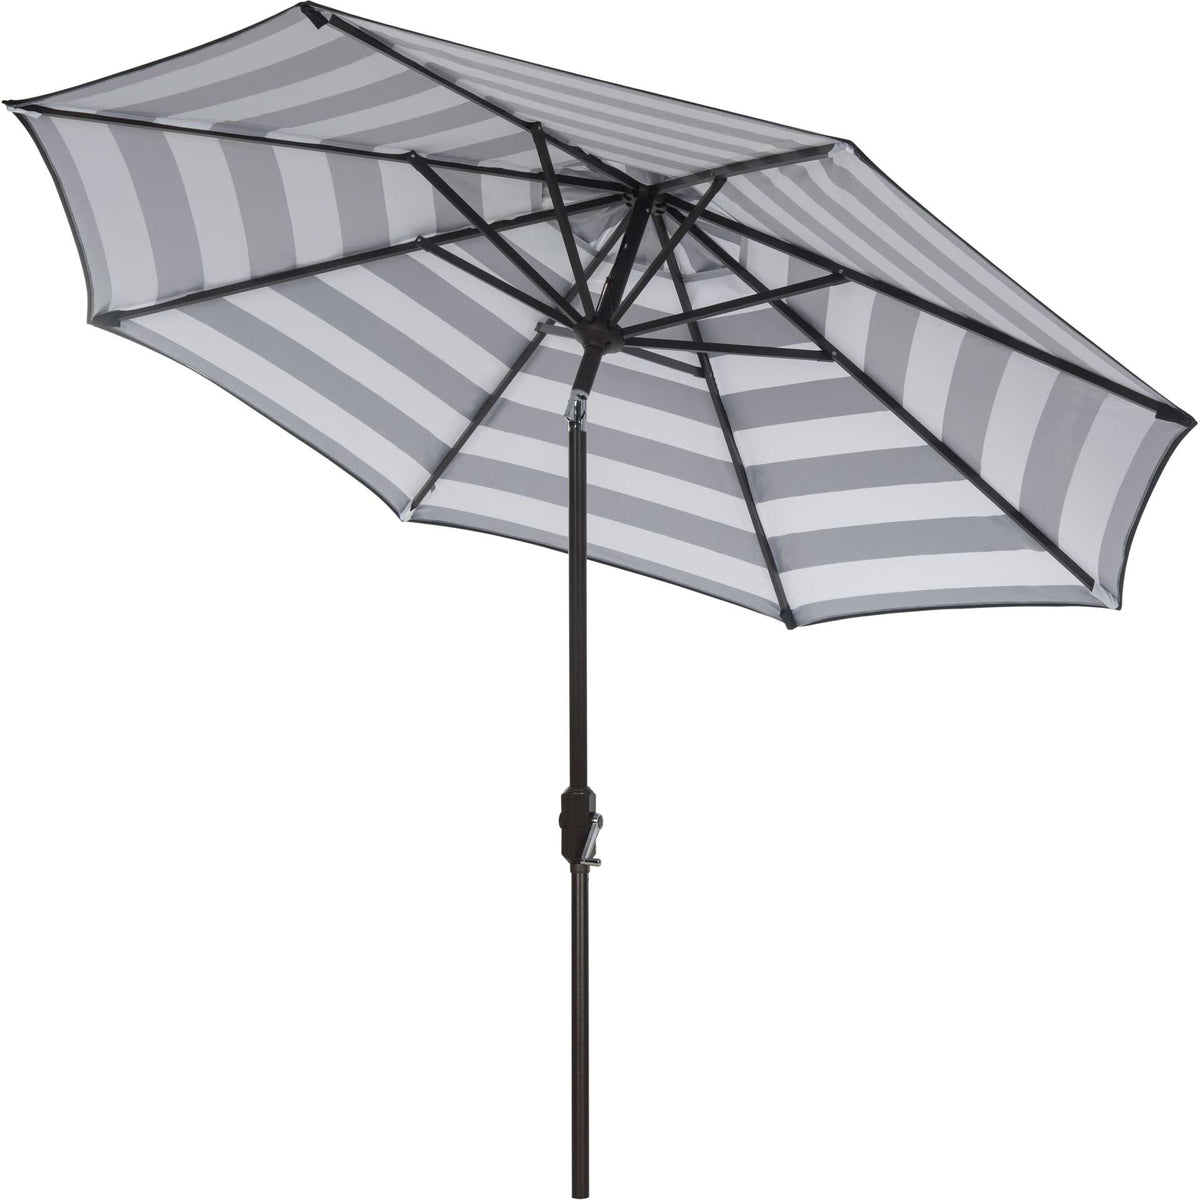 Irvin Uv Resistant Auto Tilt Umbrella Black/White